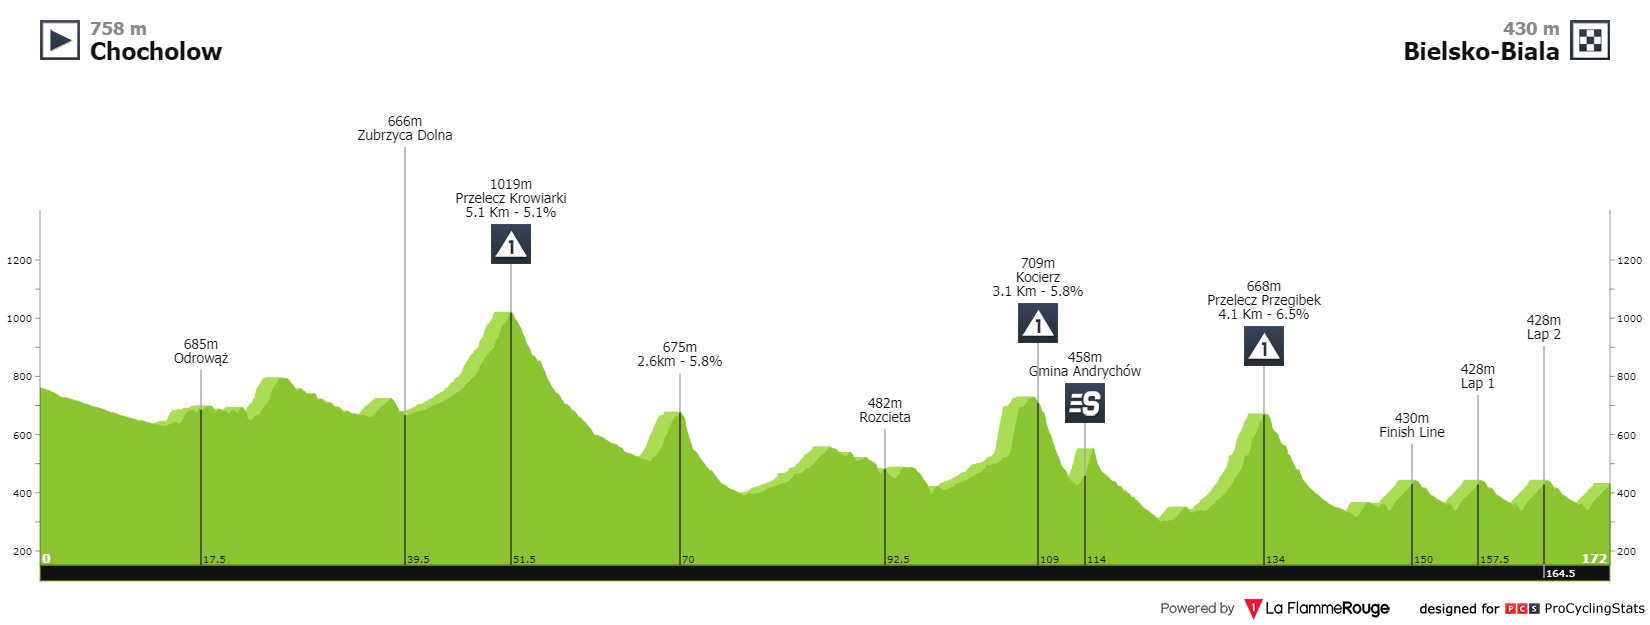 tour-de-pologne-2021-stage-5-profile-322c8d02e4.jpg